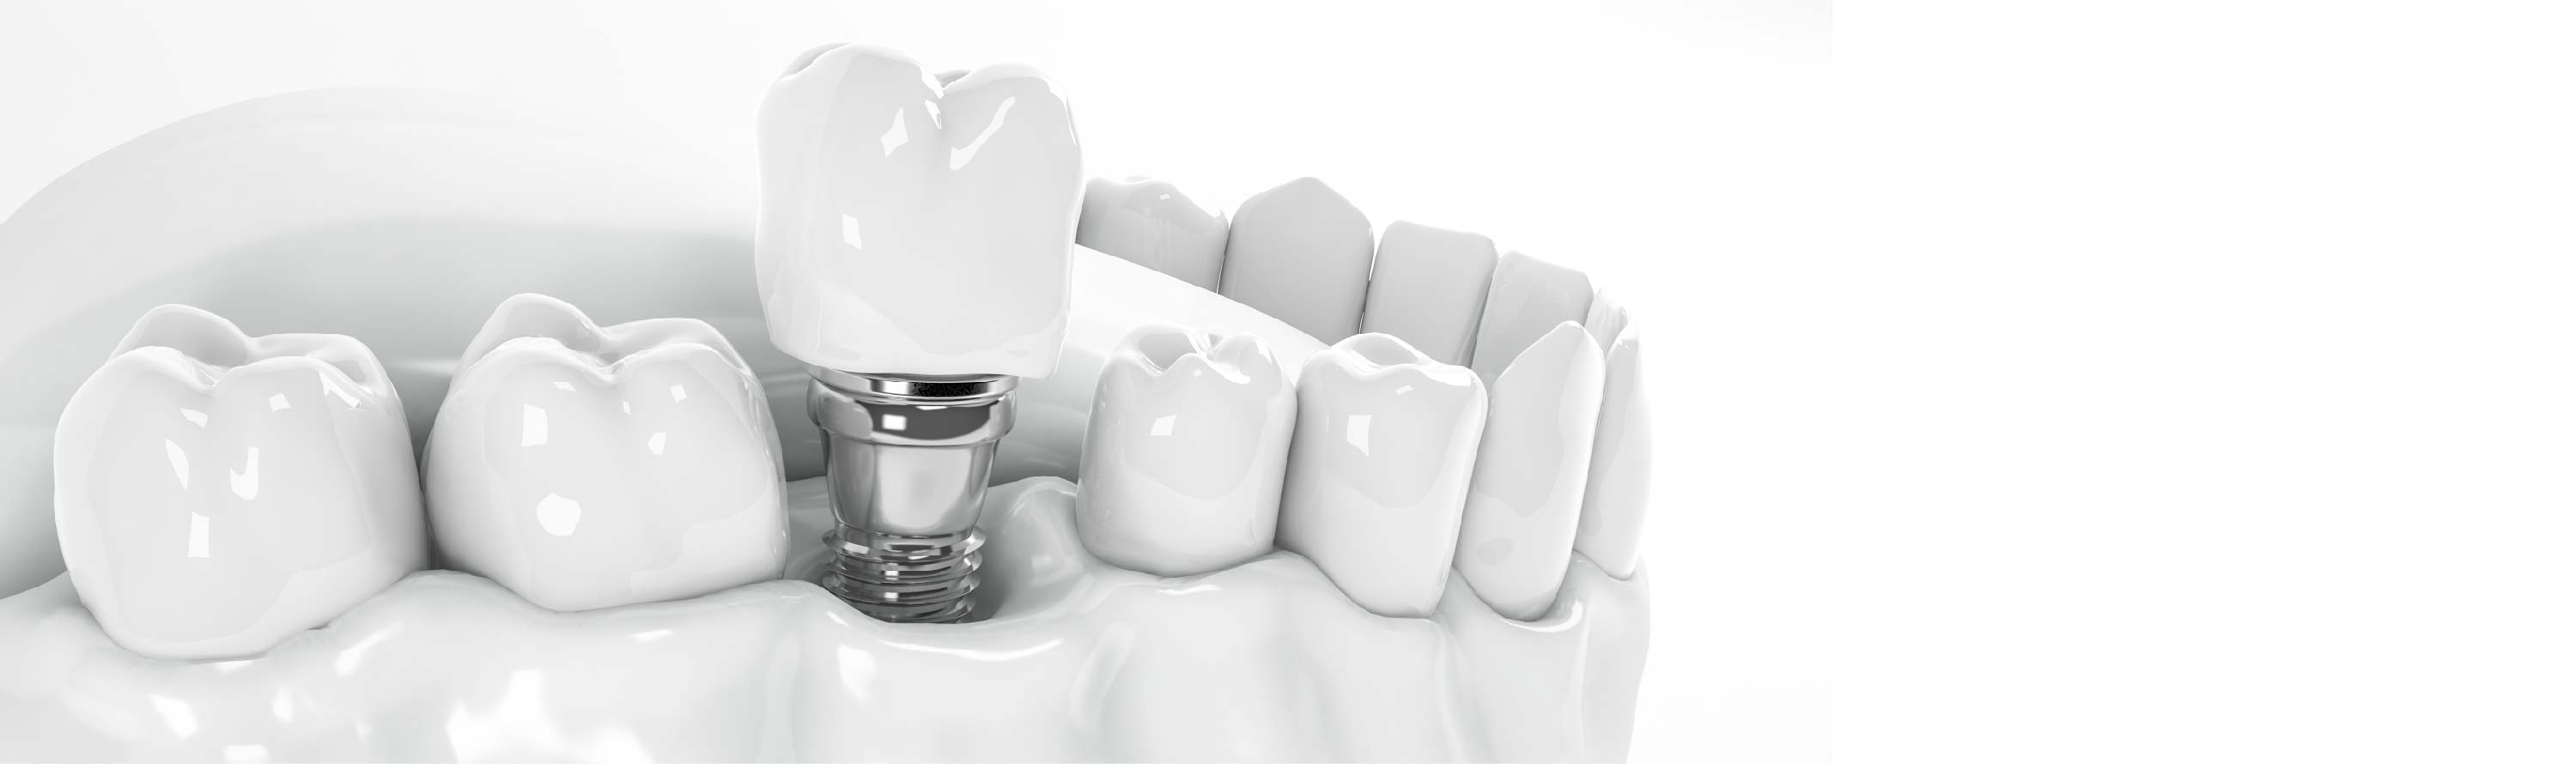 La pose d’implant dentaire